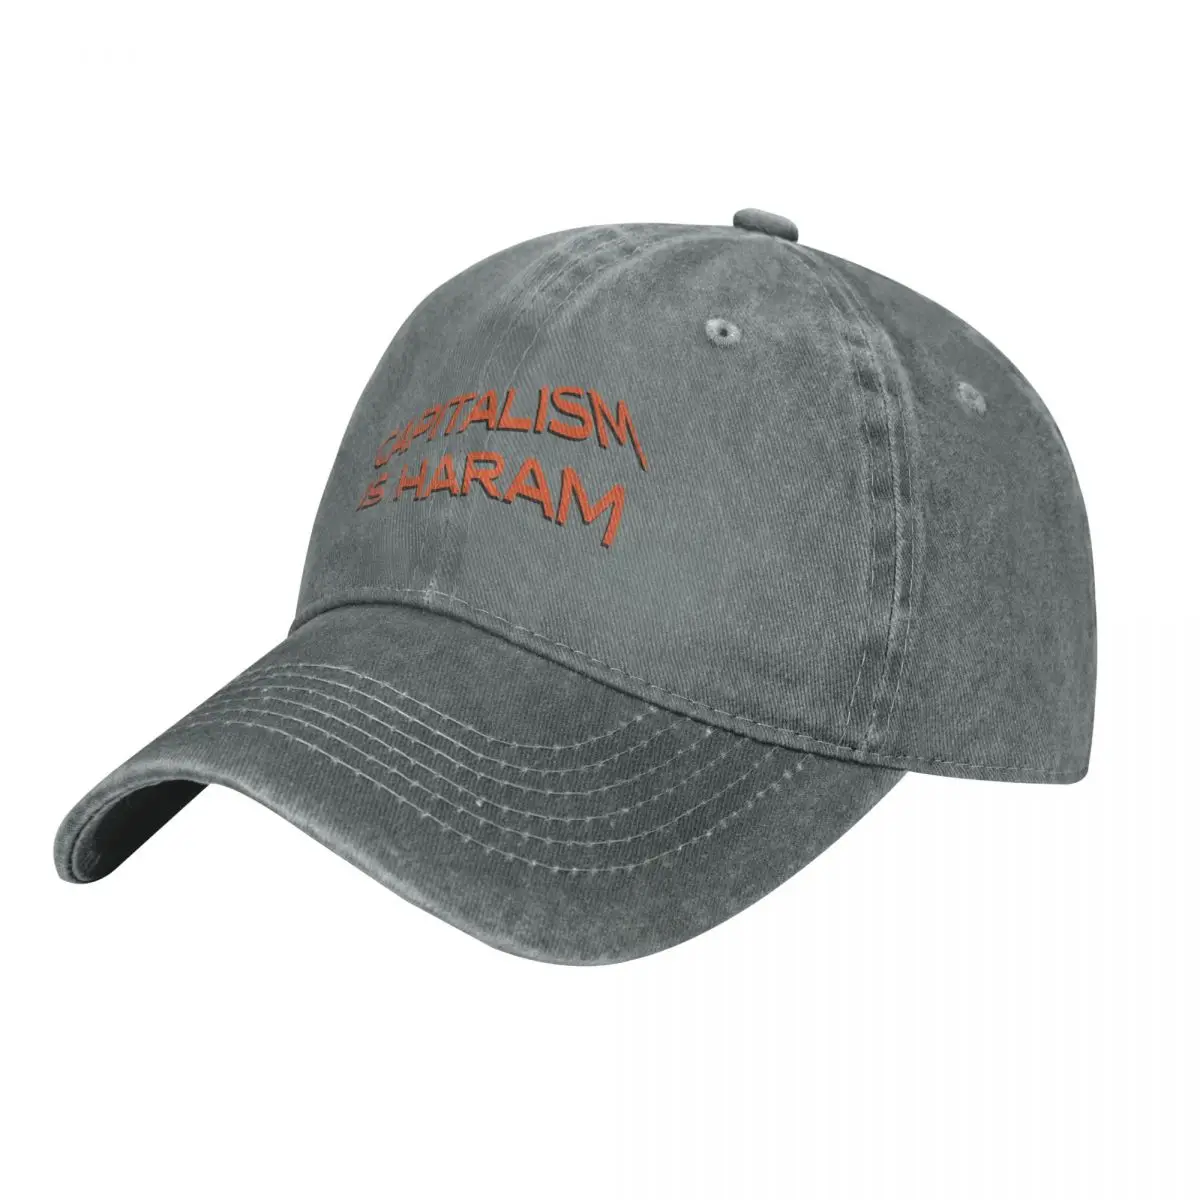 

New Red Dwarf - JMC (Jupiter Mining Corp) Cap Cowboy Hat new hat Beach outing Golf cap sunhat hat for man Women's